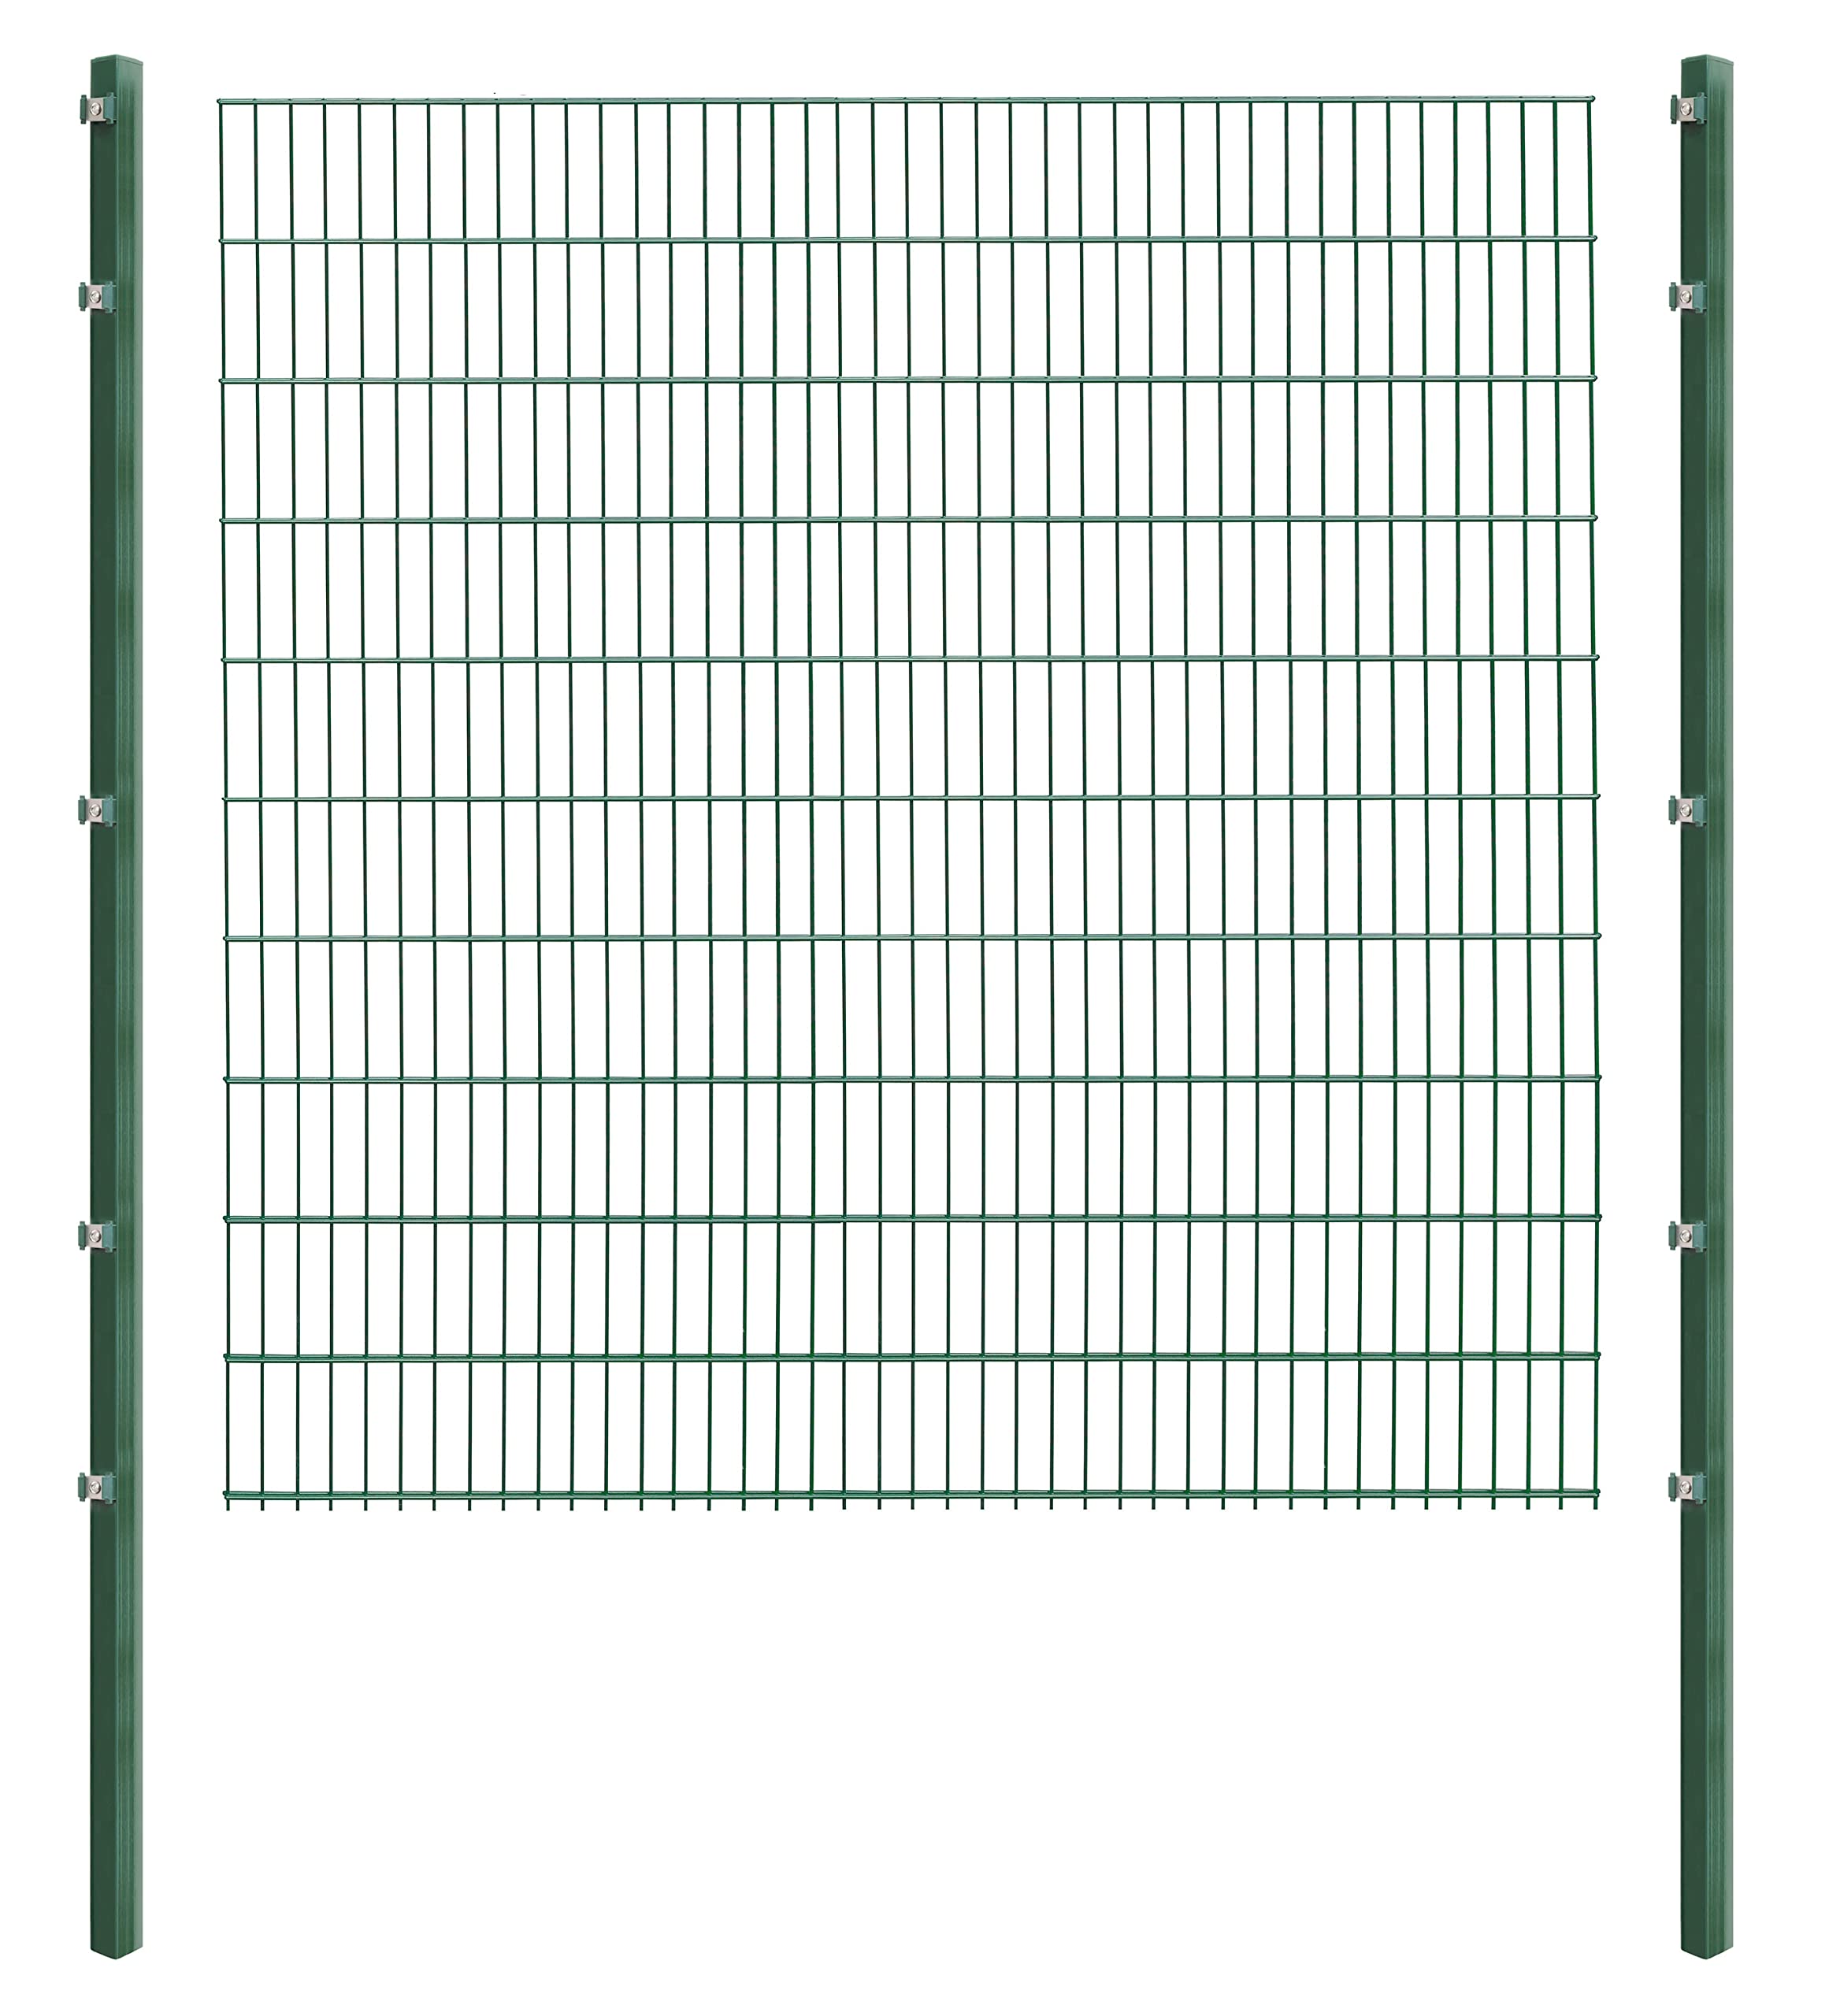 Doppelstabmattenzaun - Komplettset inkl. Pfosten (60x40mm) und Montagematerial - Verschiedene Längen und Höhen – Grün oder Anthrazit (L 4 m - H 203 cm, grün)